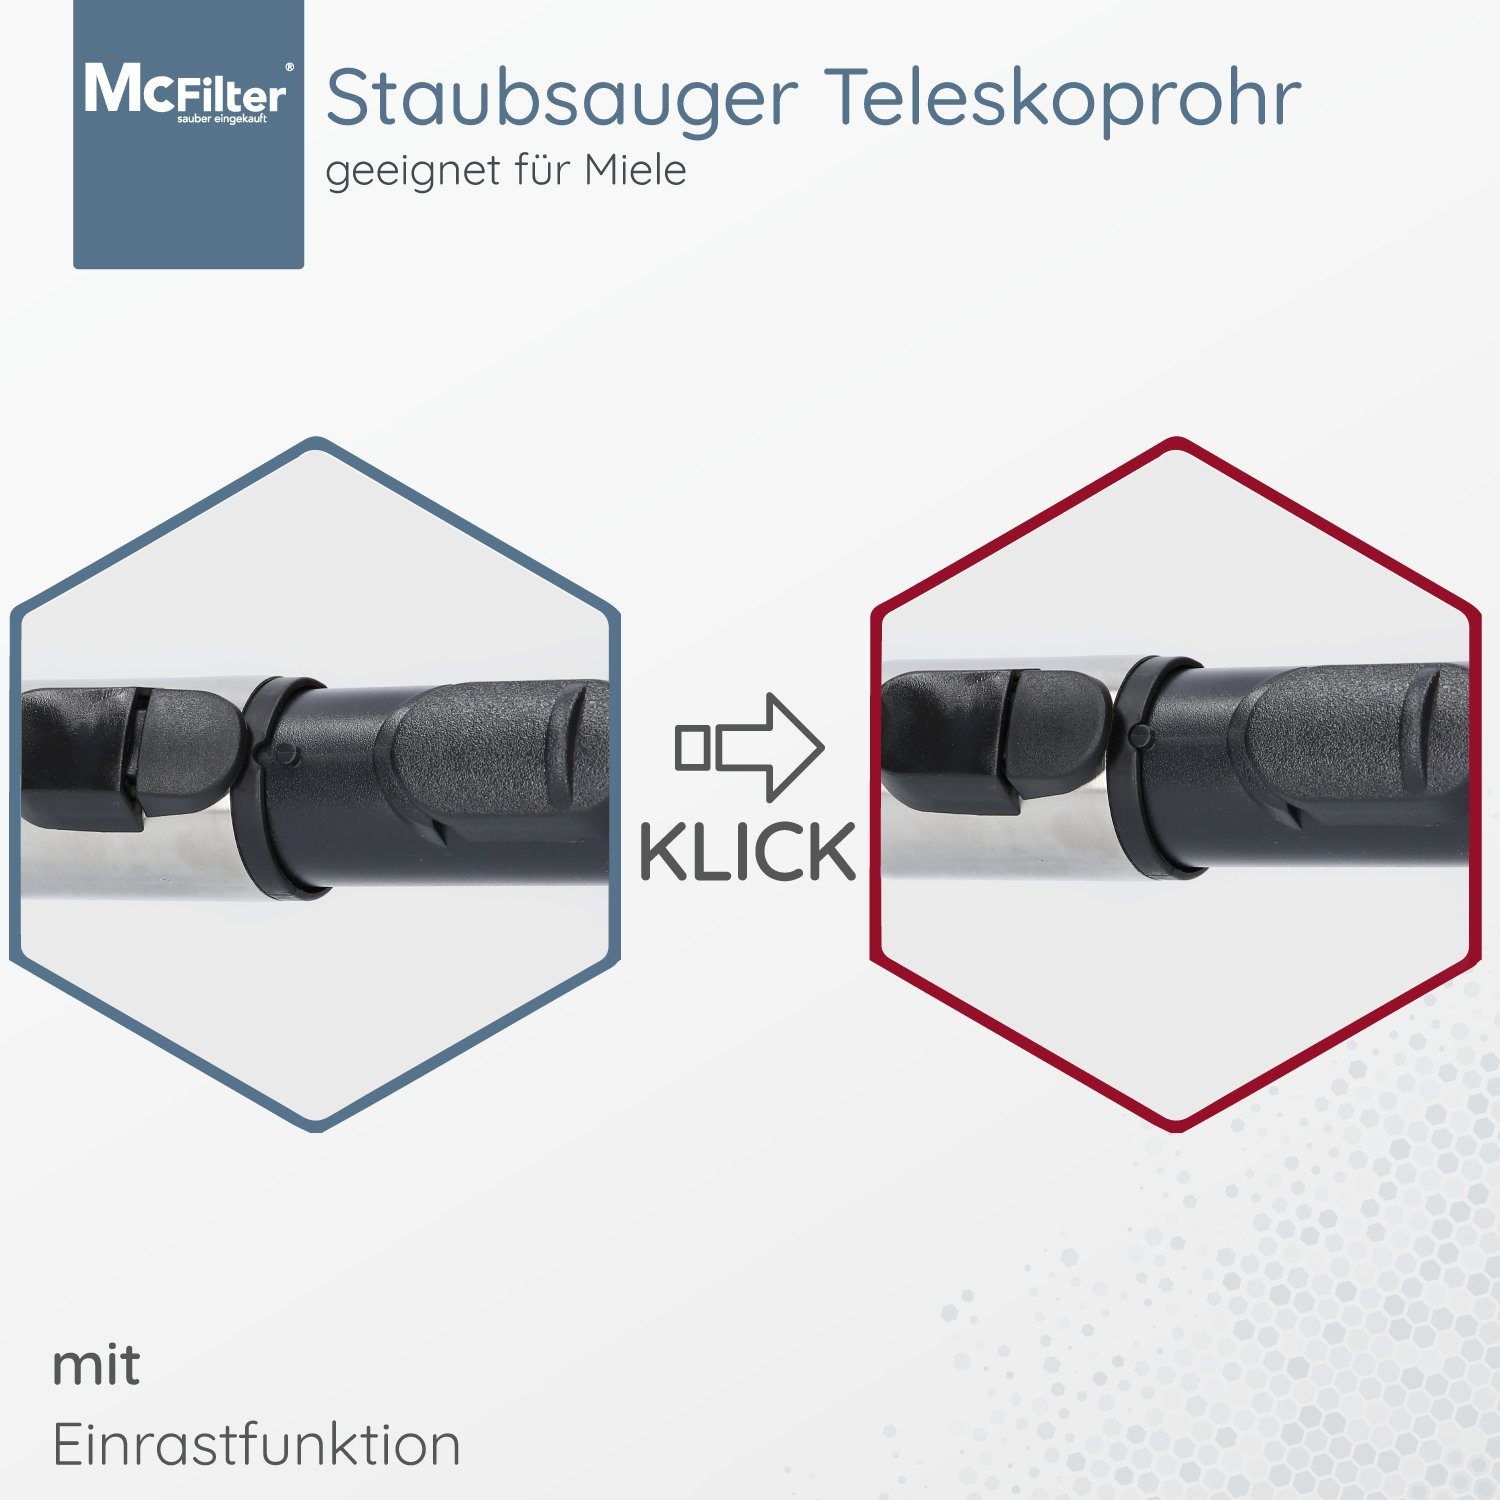 Länge: McFilter mit C3 Miele Rohr 61-103cm, Einrastsystem ca. Ø 35mm, EcoLine, geeignet für Anschluss Complete Teleskoprohr mit Silence Saugrohr